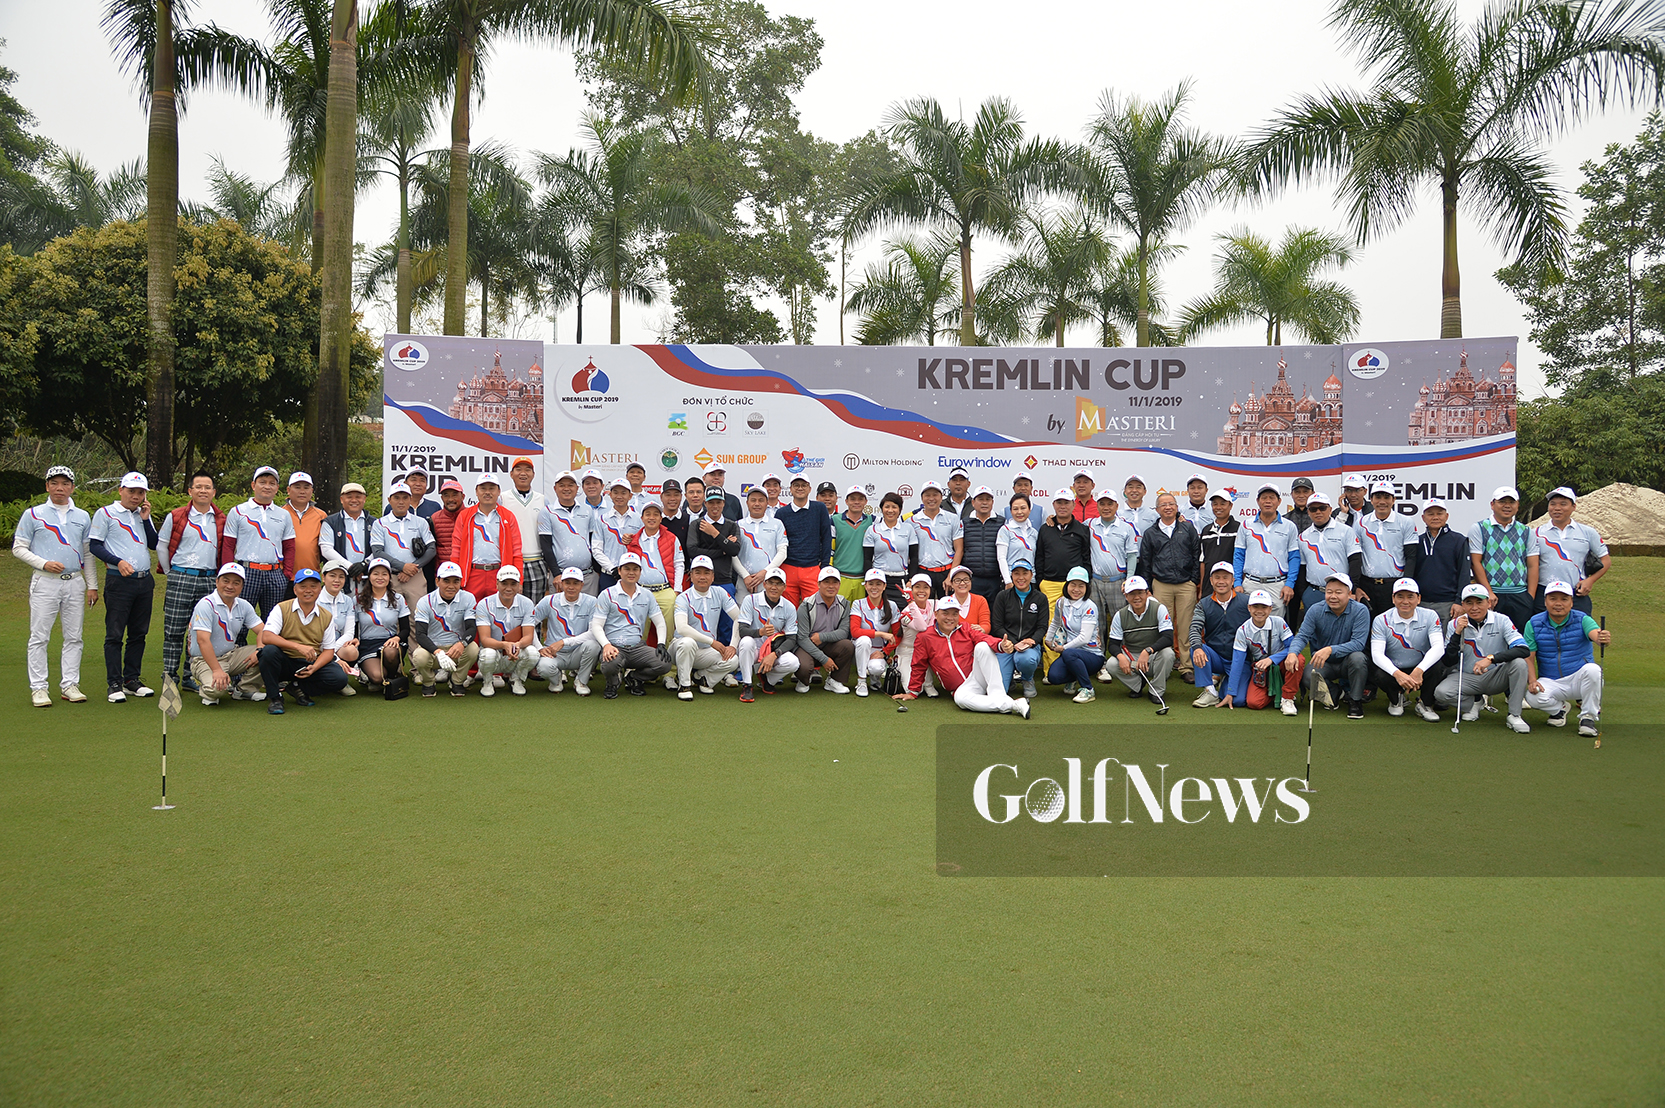 Giải golf Kremlin Cup 2019 chính thức khởi tranh